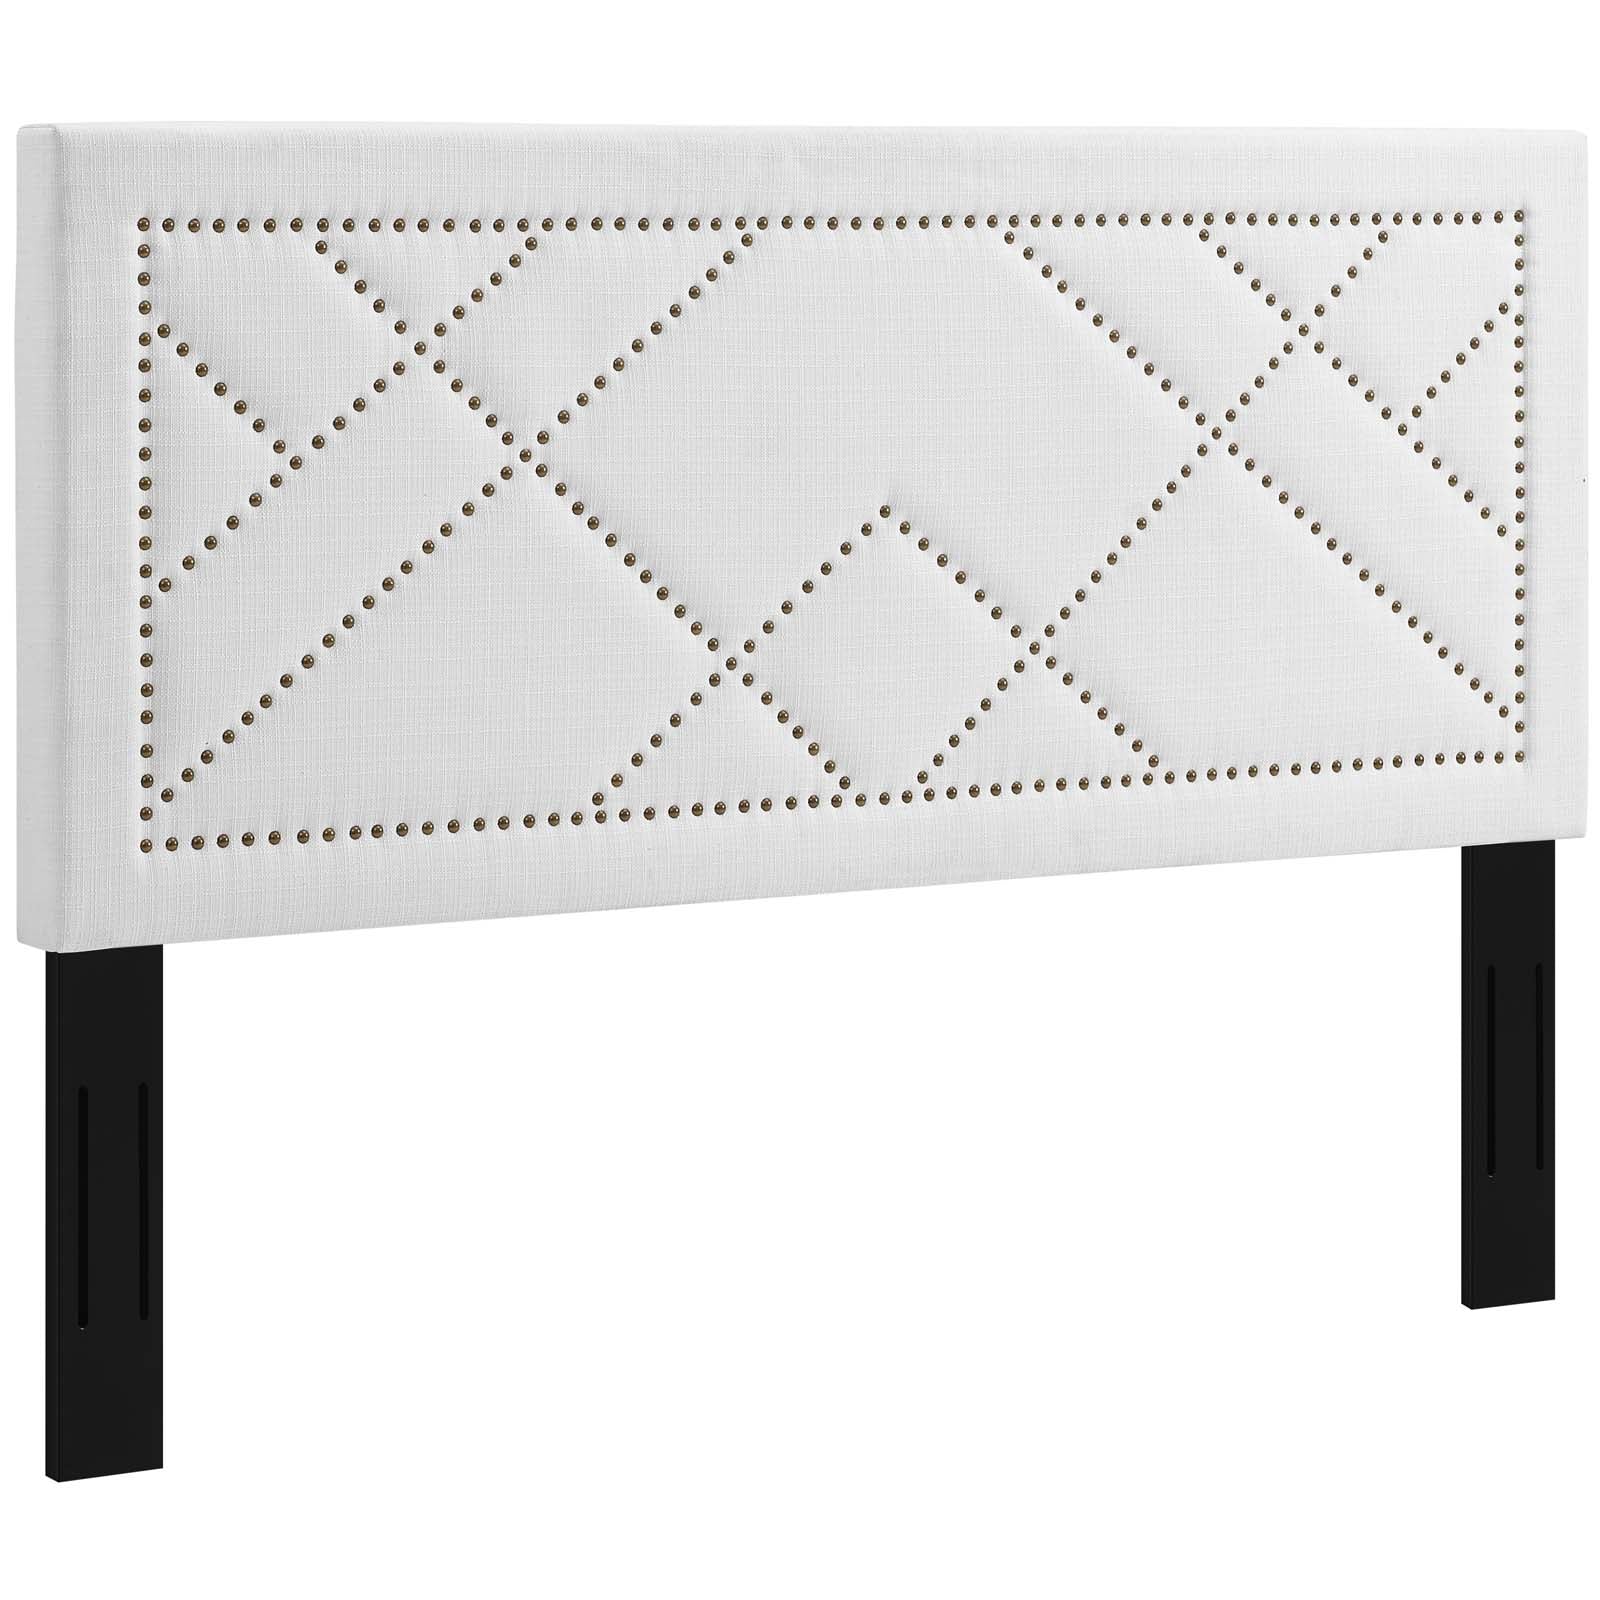 Modway Furniture Modern Reese Nailhead Full / Queen Upholstered Linen Fabric Headboard - MOD-5844